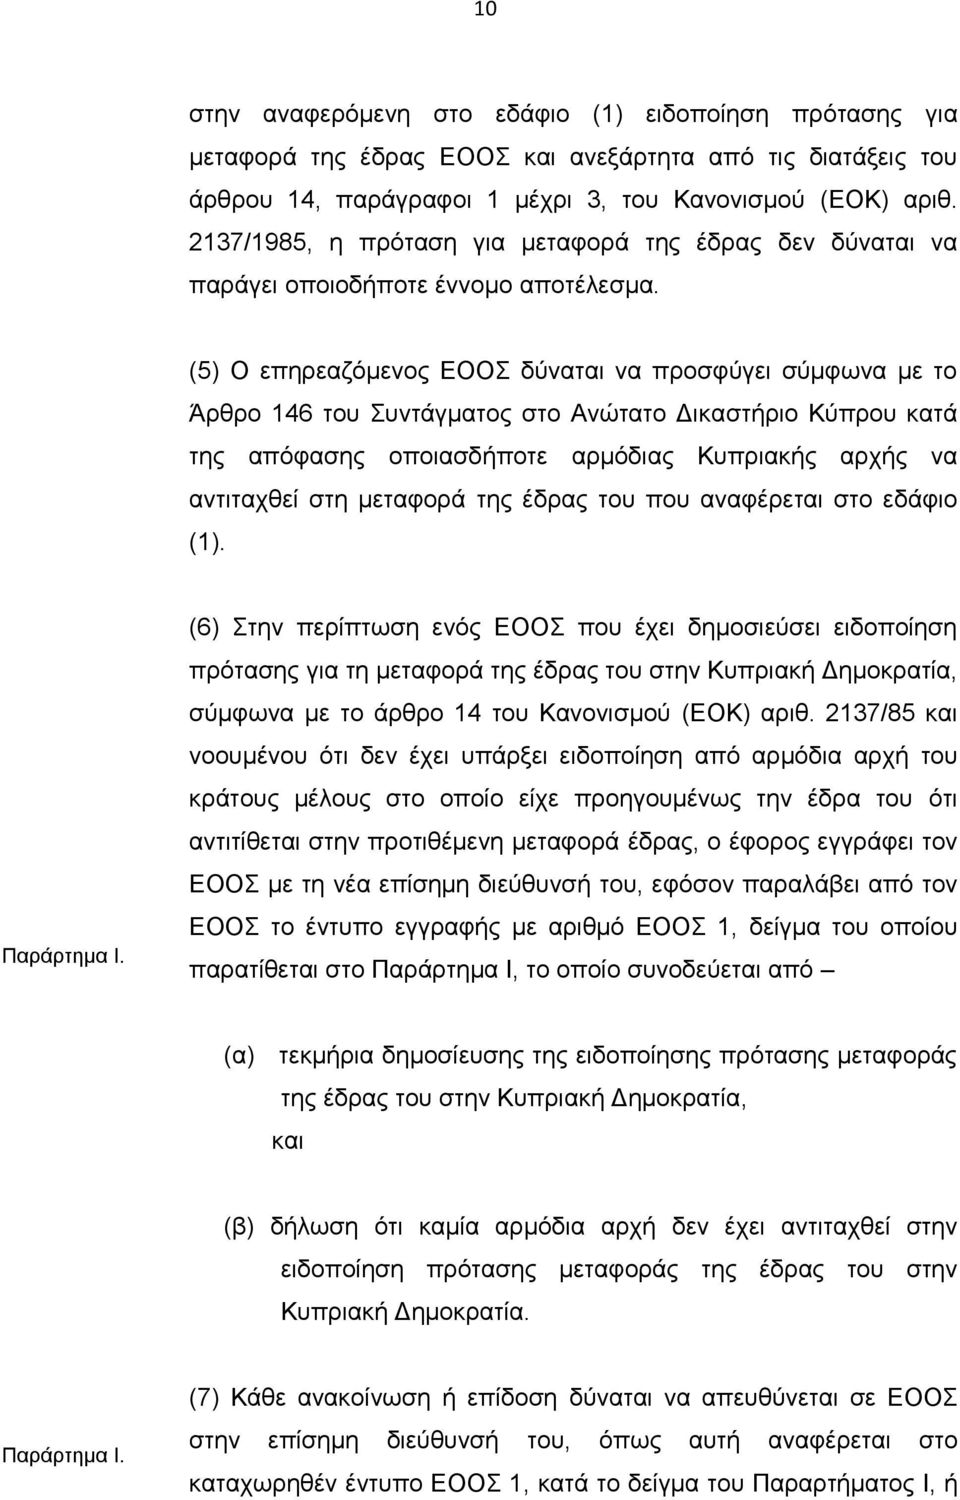 (5) Ο επηρεαζόμενος ΕΟΟΣ δύναται να προσφύγει σύμφωνα με το Άρθρο 146 του Συντάγματος στο Ανώτατο Δικαστήριο Κύπρου κατά της απόφασης οποιασδήποτε αρμόδιας Κυπριακής αρχής να αντιταχθεί στη μεταφορά